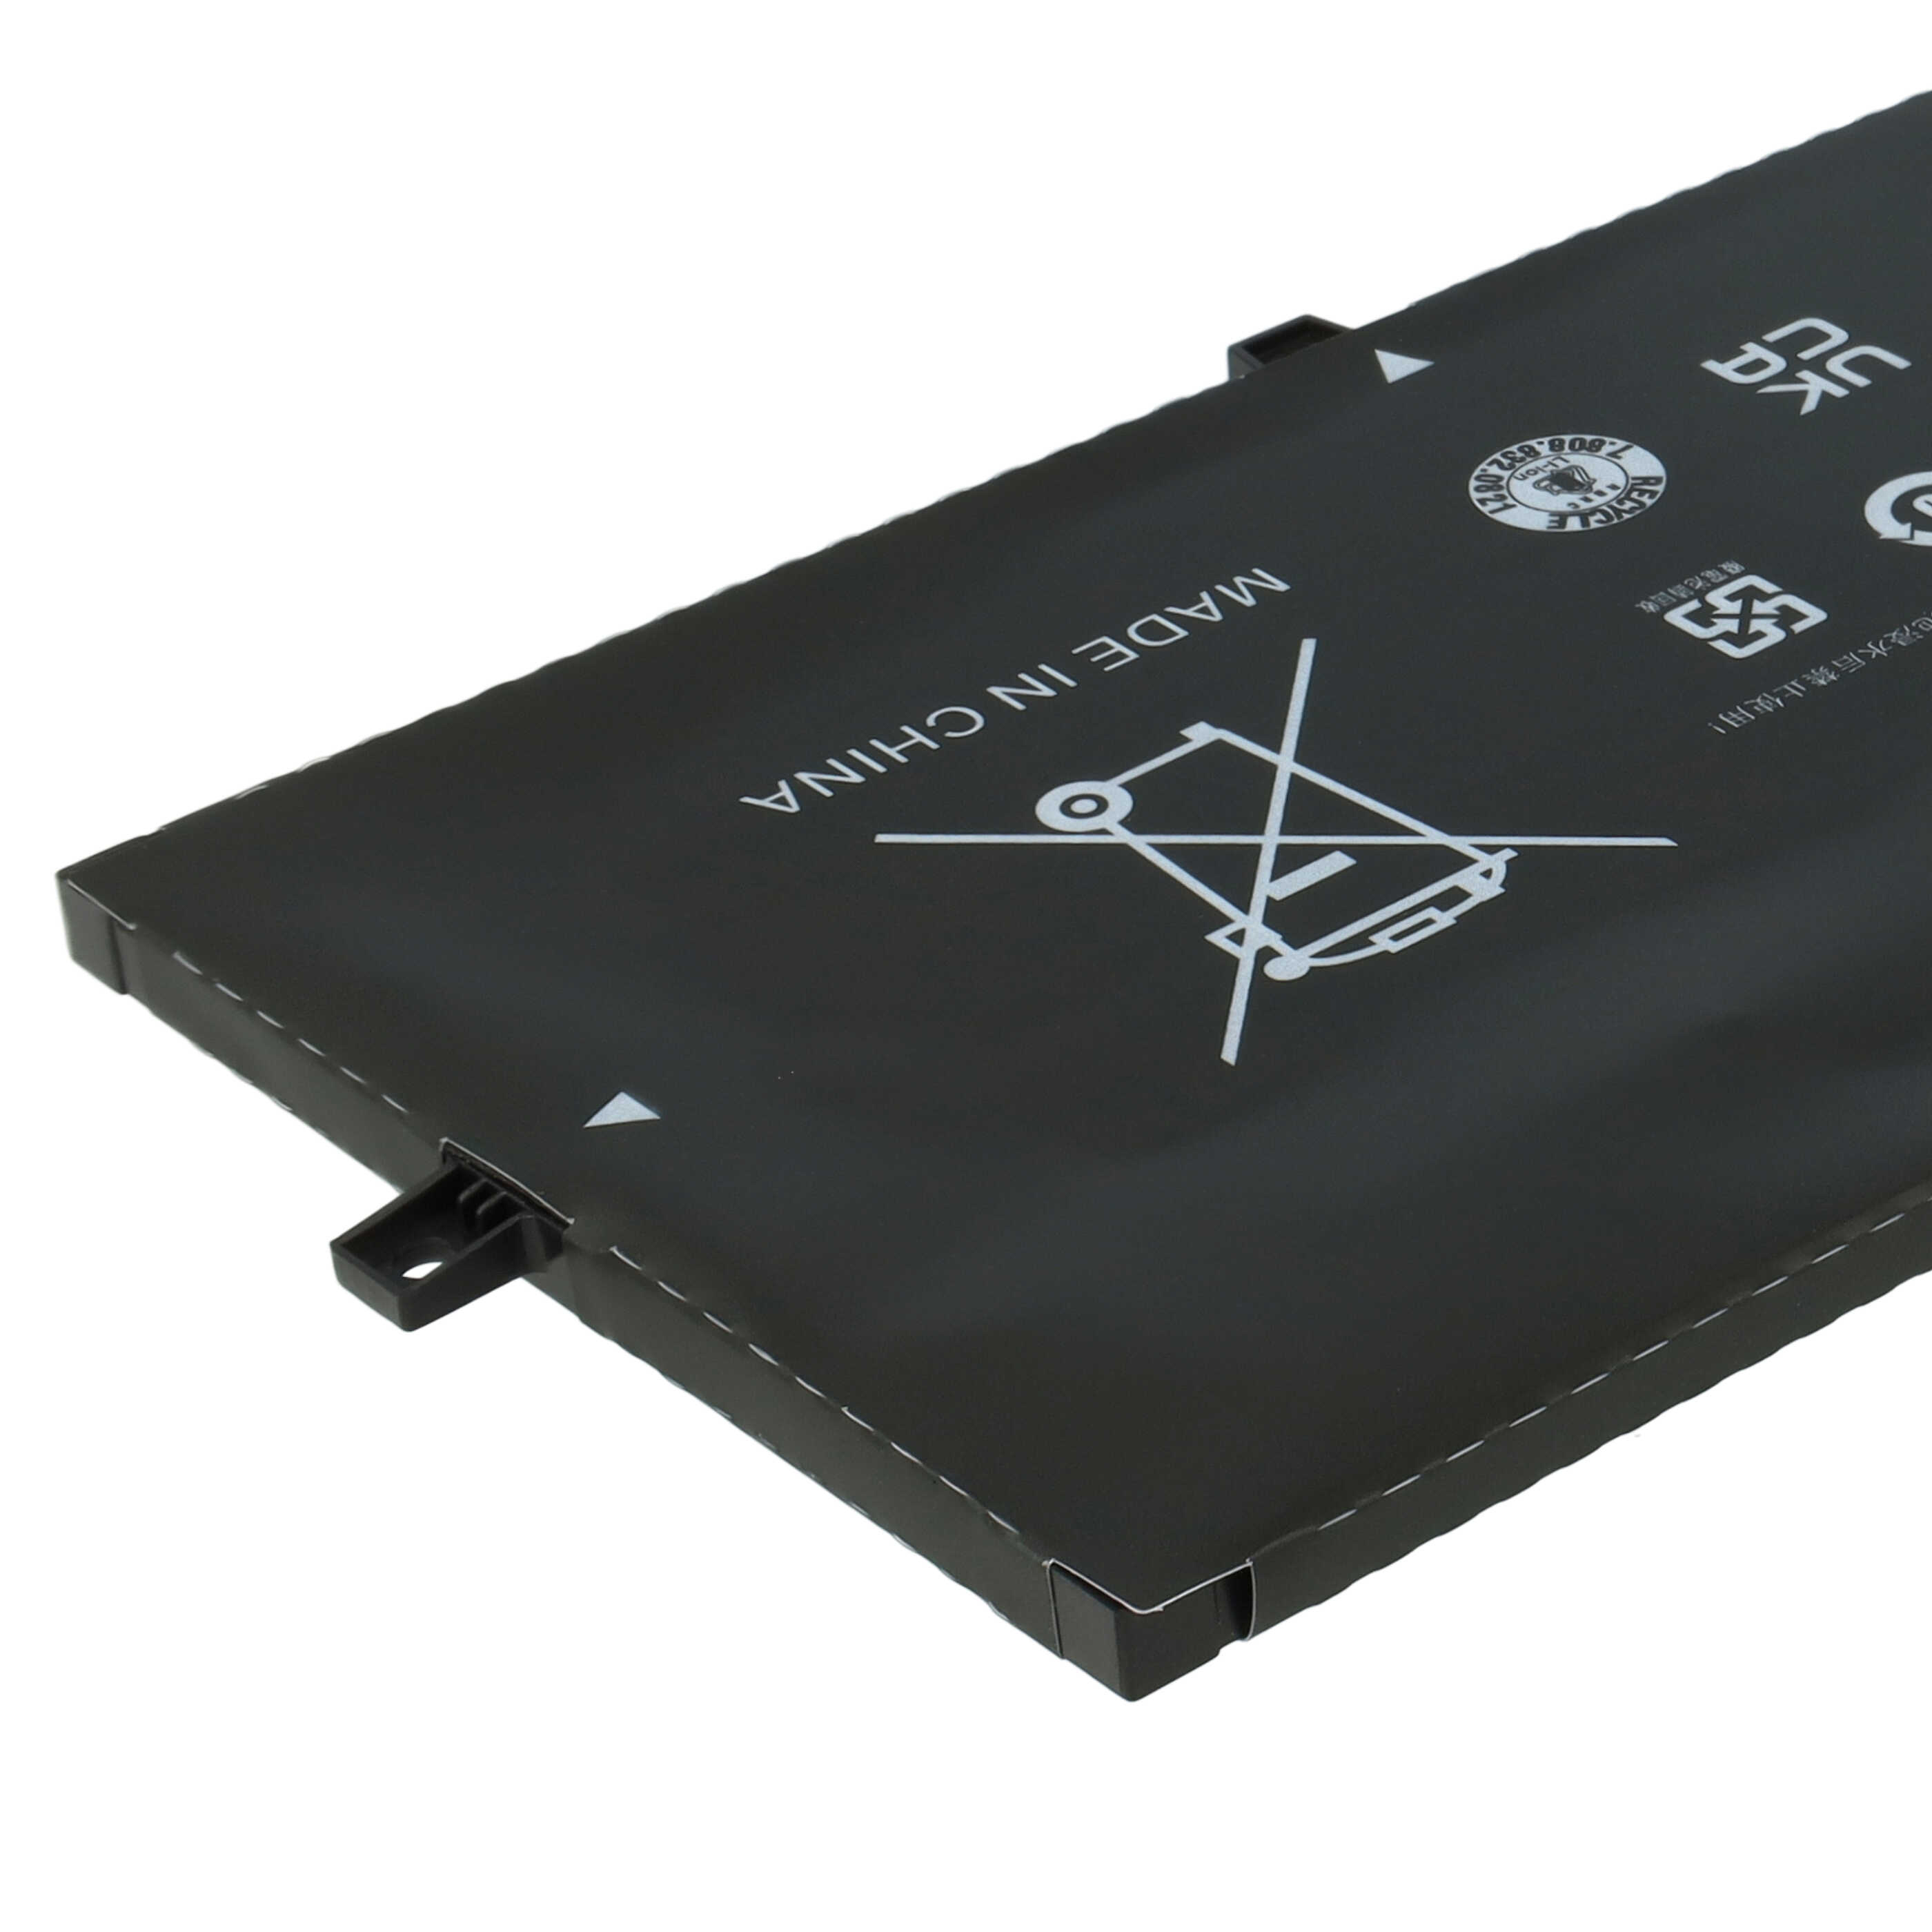 Notebook Battery Replacement for HP HSTNN-DB8L, BM04XL, BM04056XL, HSTNN-UB7L - 7300mAh 7.6V Li-Ion